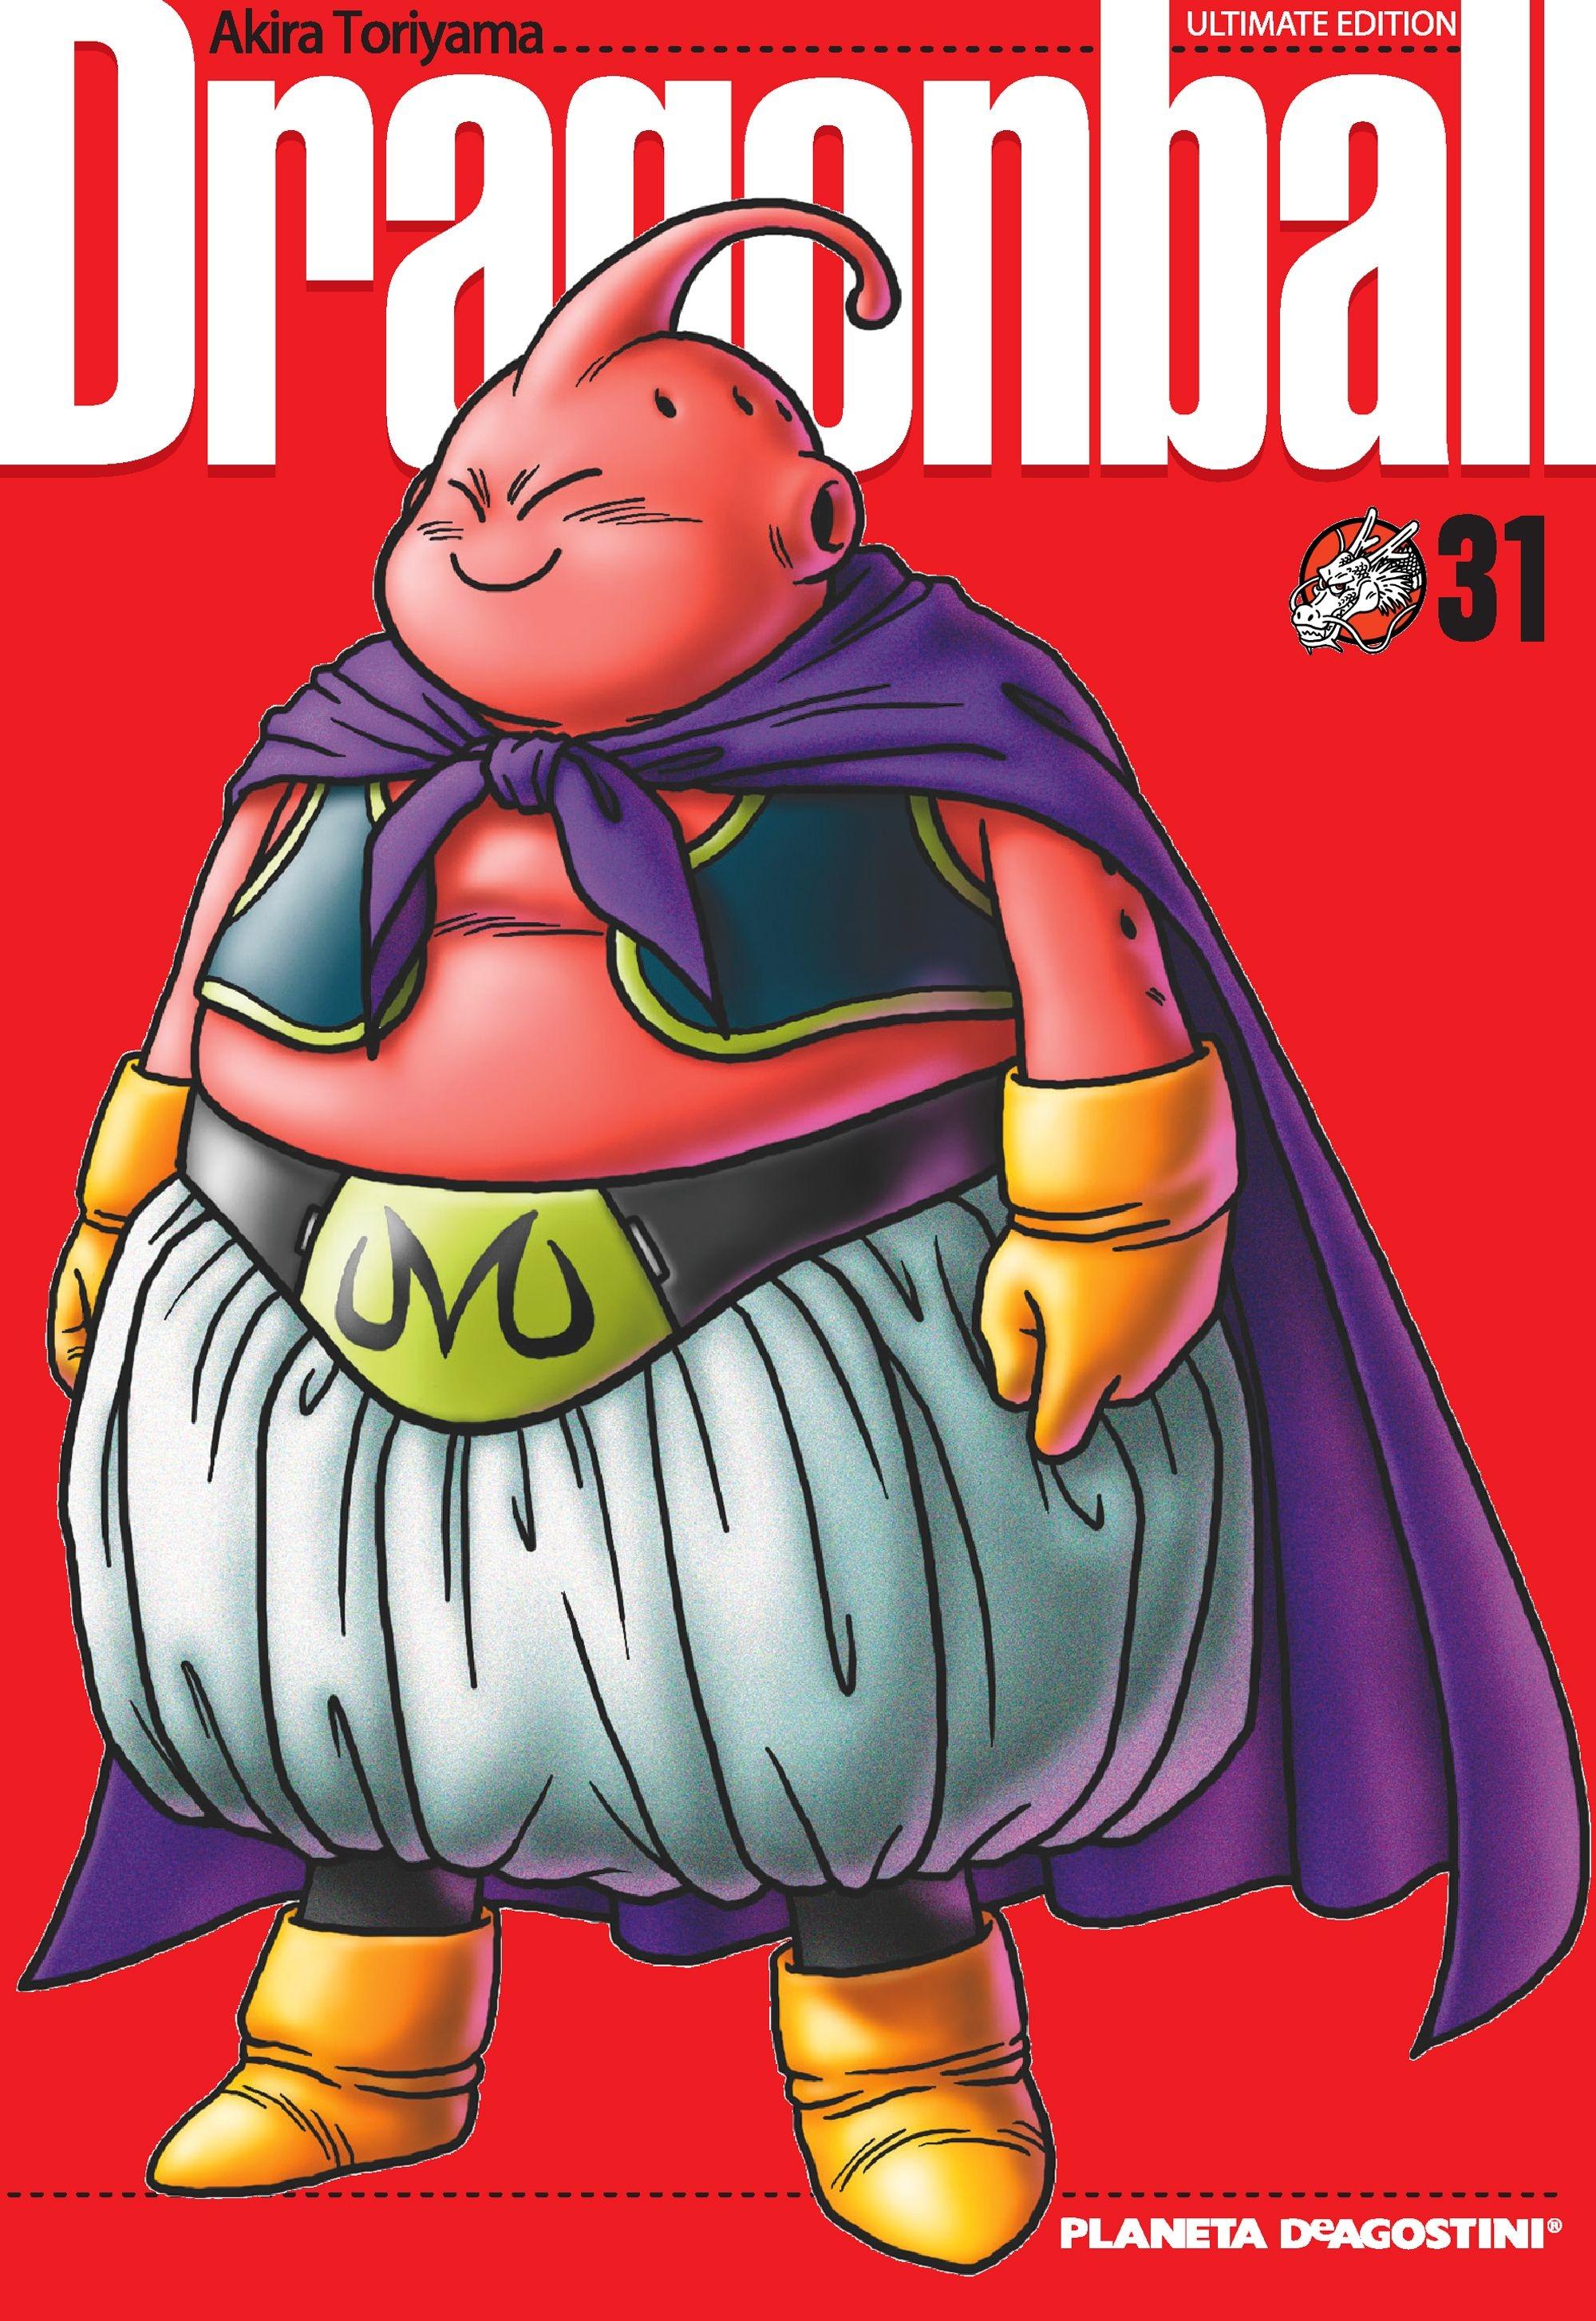 Dragon Ball Nº 31/34 "Ultimate Edition"